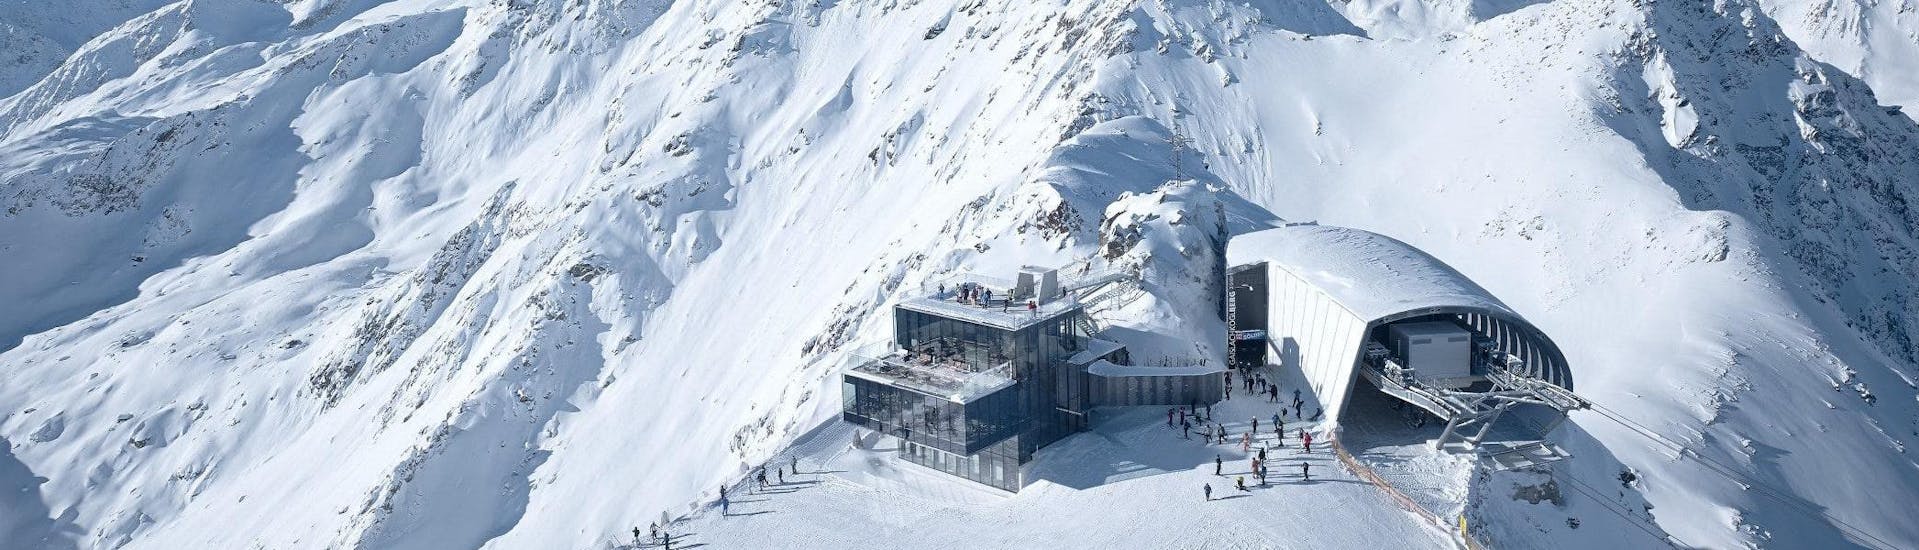 Vue sur un paysage de montagne ensoleillé lors d'un cours de ski avec l'une des écoles de ski de la station de ski Sölden.